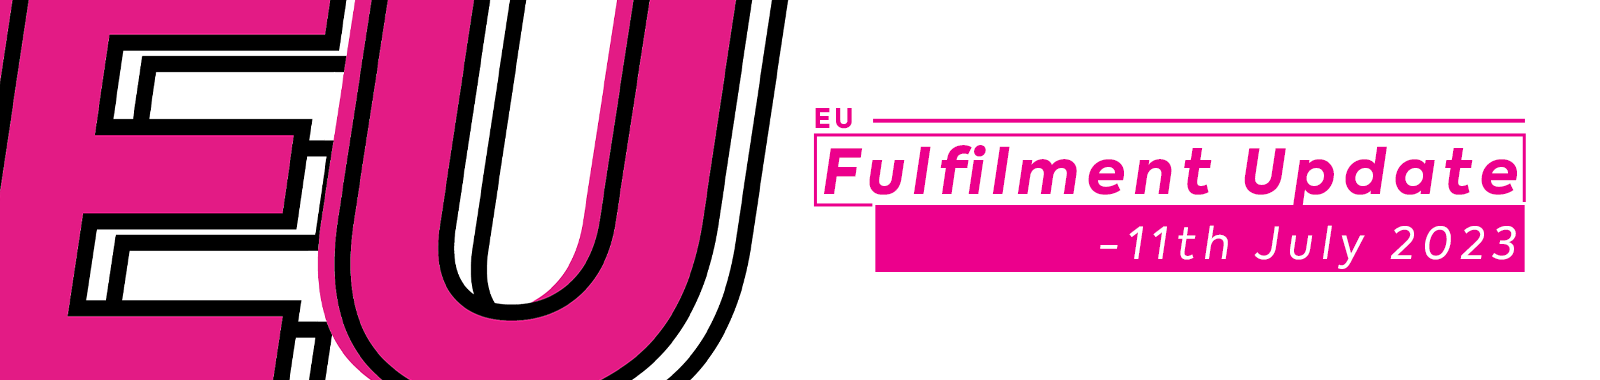 EU Fulfilment Update -11th July